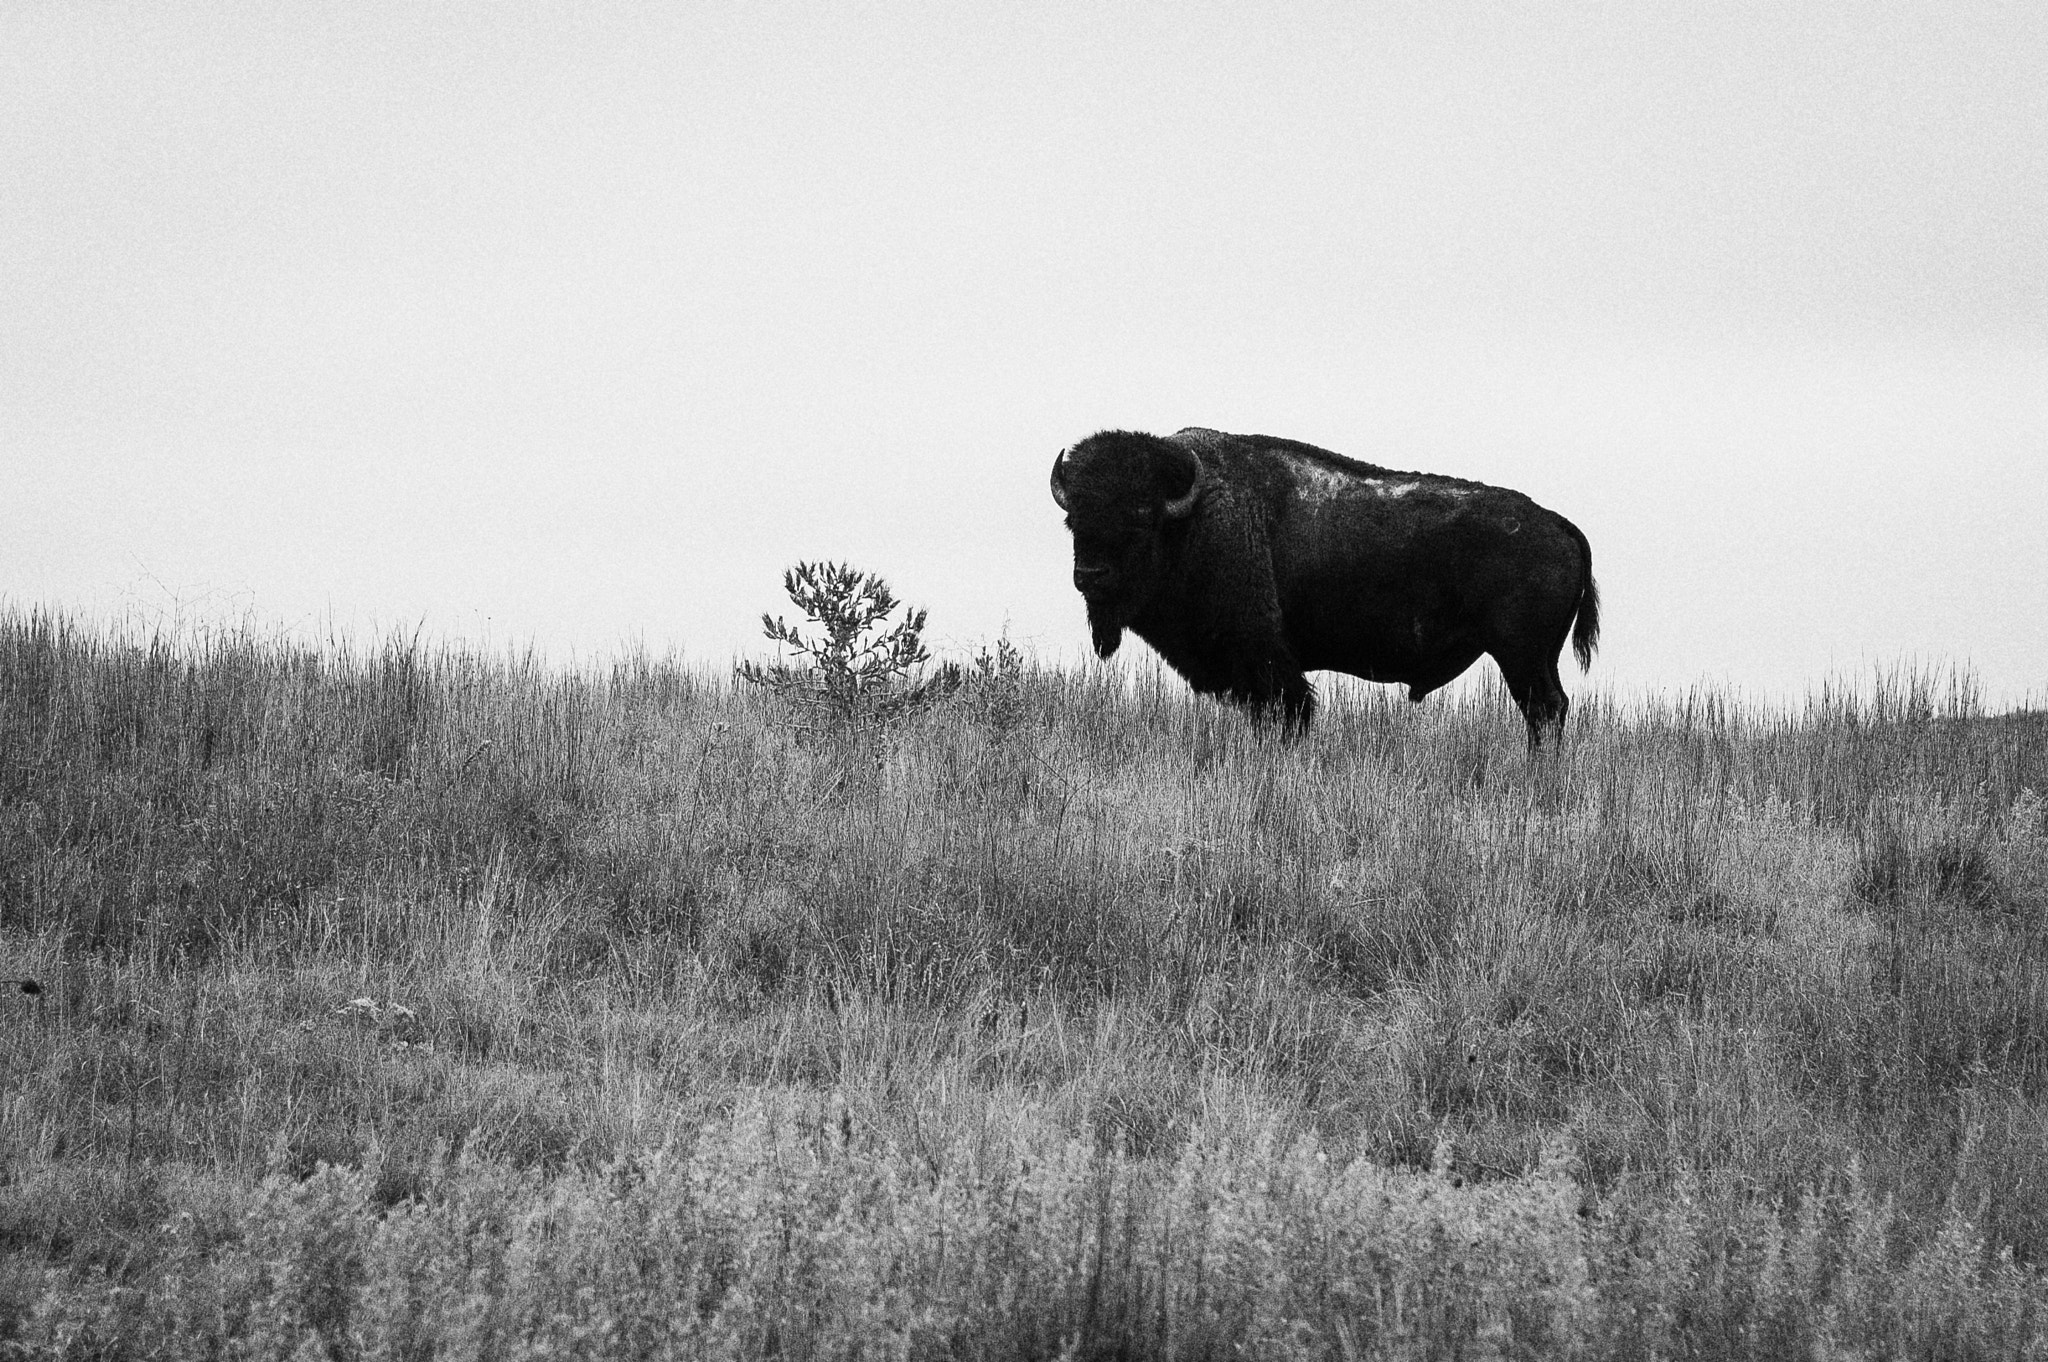 Nikon D70 + AF Zoom-Nikkor 28-85mm f/3.5-4.5 sample photo. Bison bull at big basin in b&w photography